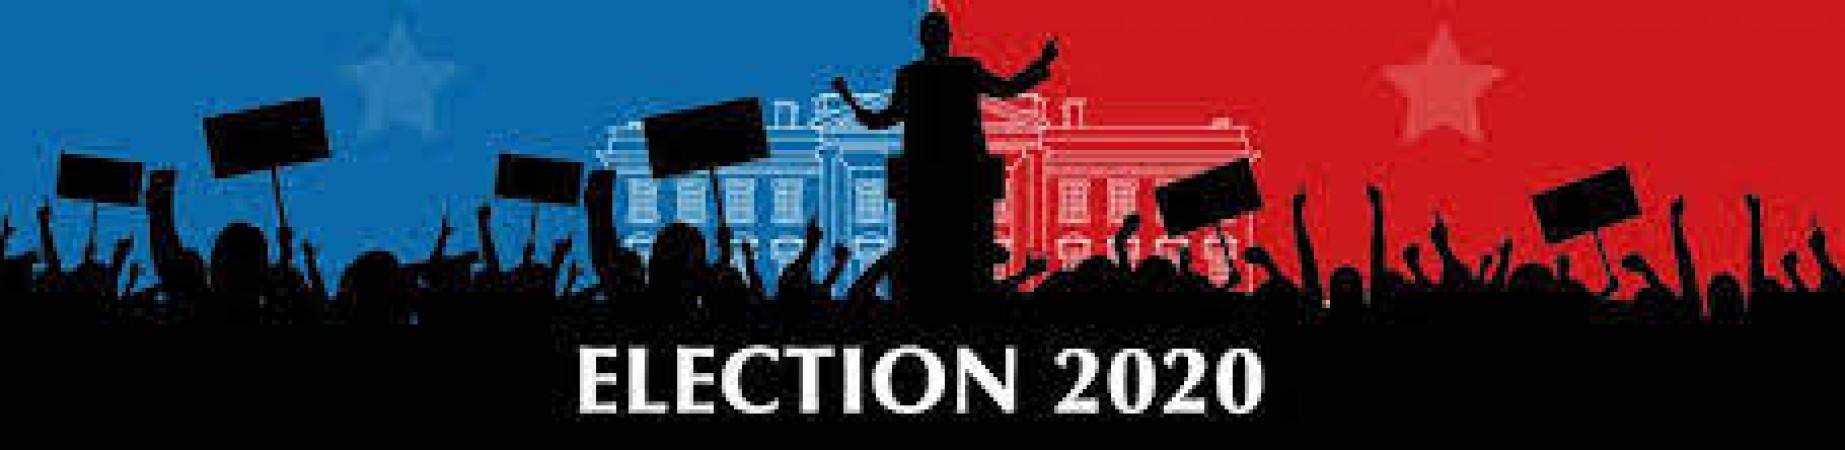 अमेरिकी चुनाव 2020: सुप्रीम कोर्ट की हार ने रिपब्लिकन को किया अवाक